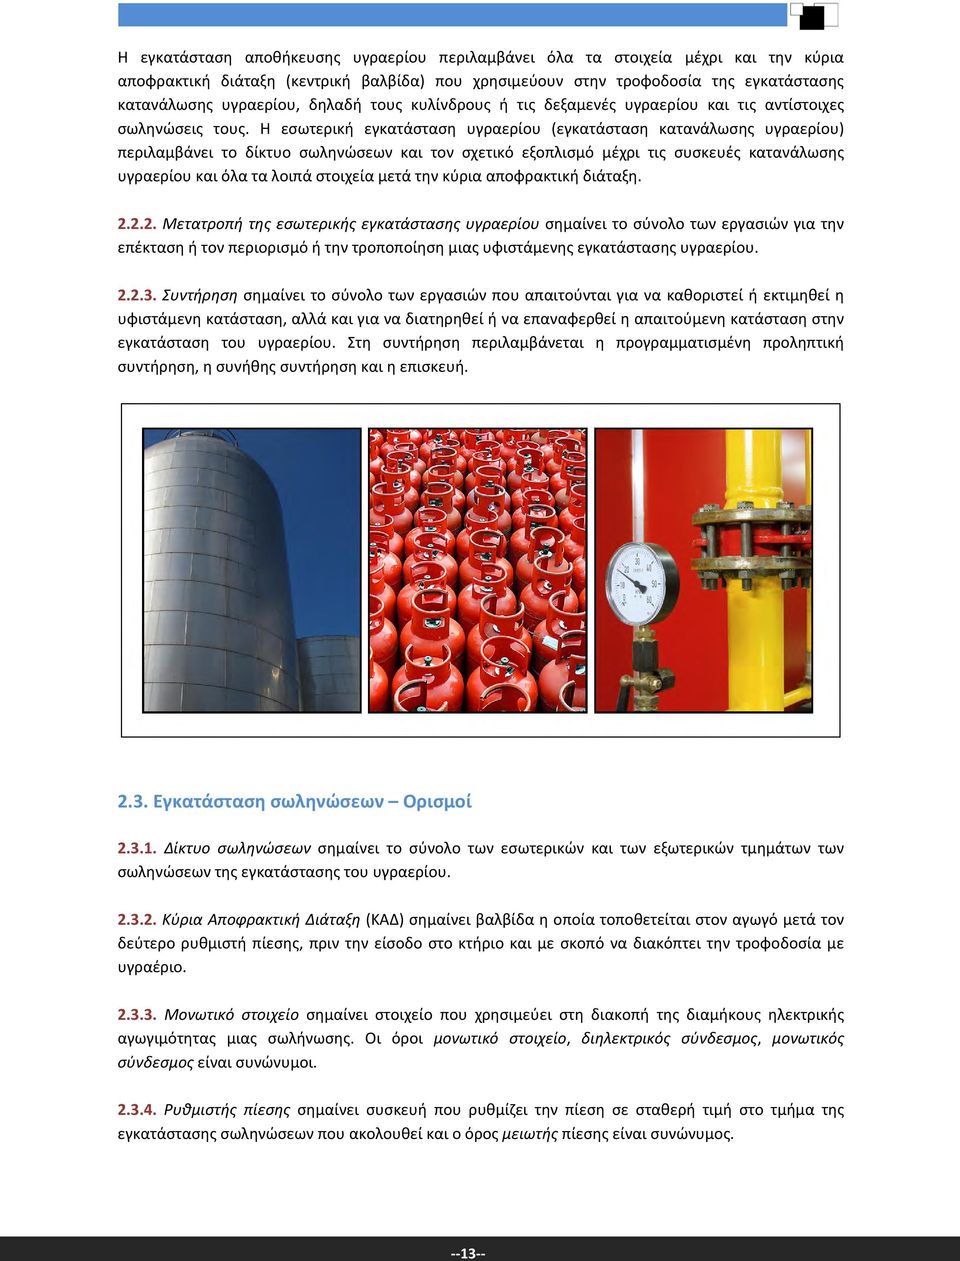 Η εσωτερική εγκατάσταση υγραερίου (εγκατάσταση κατανάλωσης υγραερίου) περιλαμβάνει το δίκτυο σωληνώσεων και τον σχετικό εξοπλισμό μέχρι τις συσκευές κατανάλωσης υγραερίου και όλα τα λοιπά στοιχεία